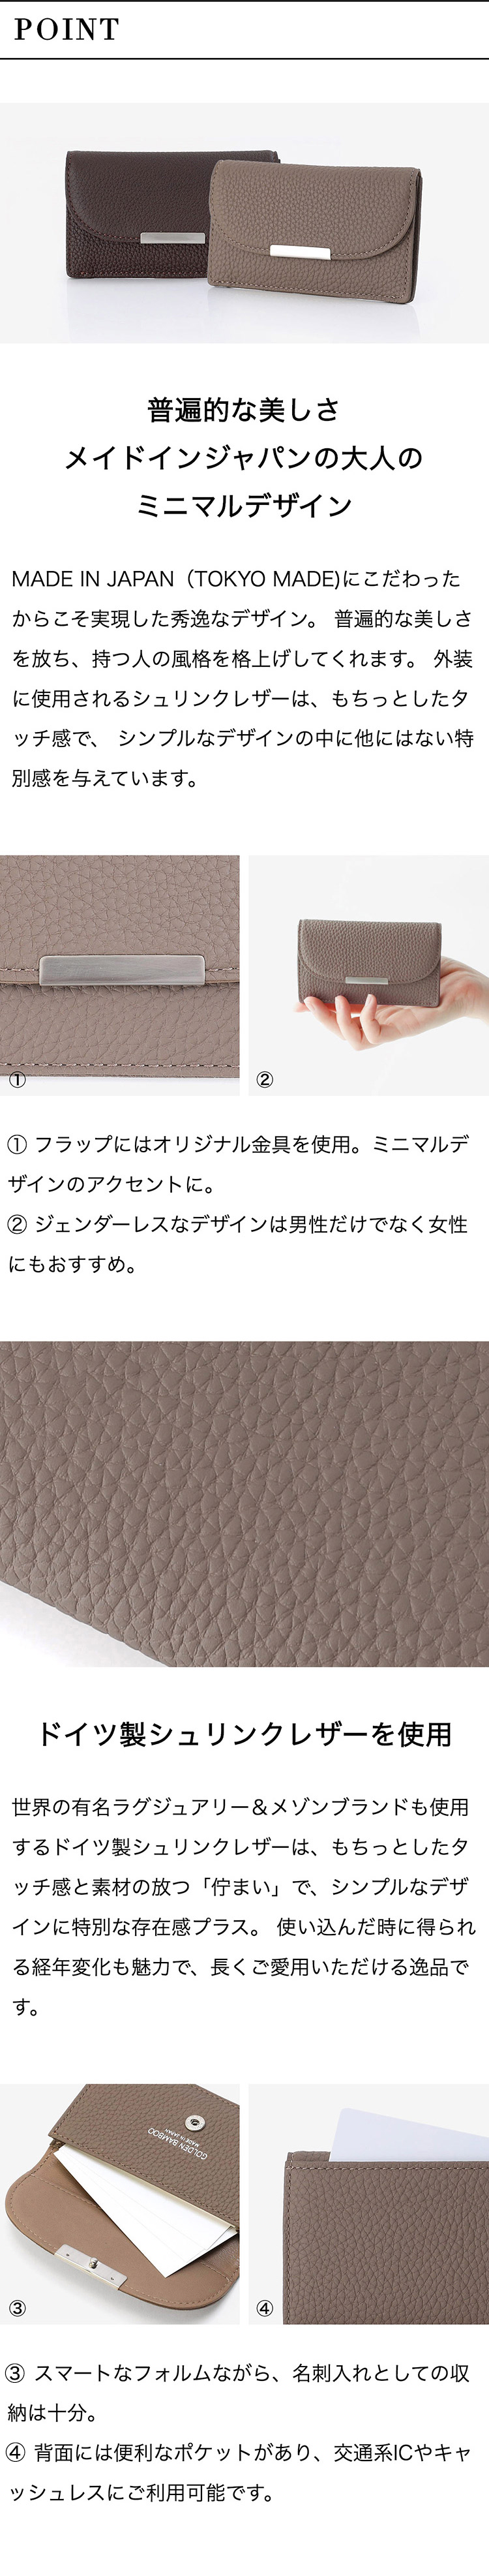 ゴールデンバンブー 名刺入れ メンズ Gb 246 日本製 Golden Bamboo カードケース 牛革 本革 レザー サックスバー ネット公式通販サイト